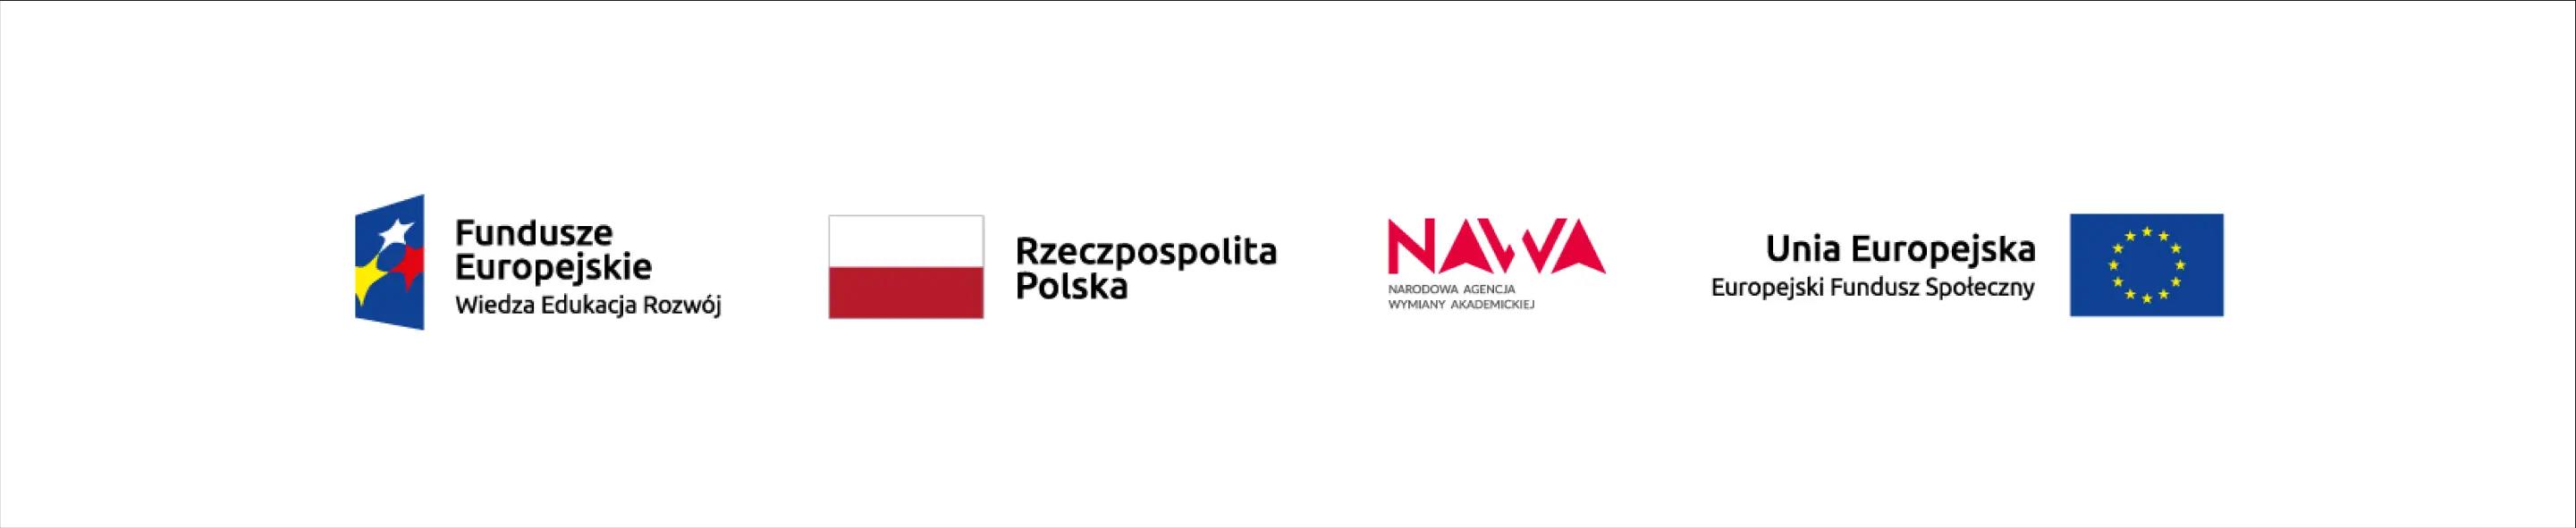 NAWA grant for university app development in Poland